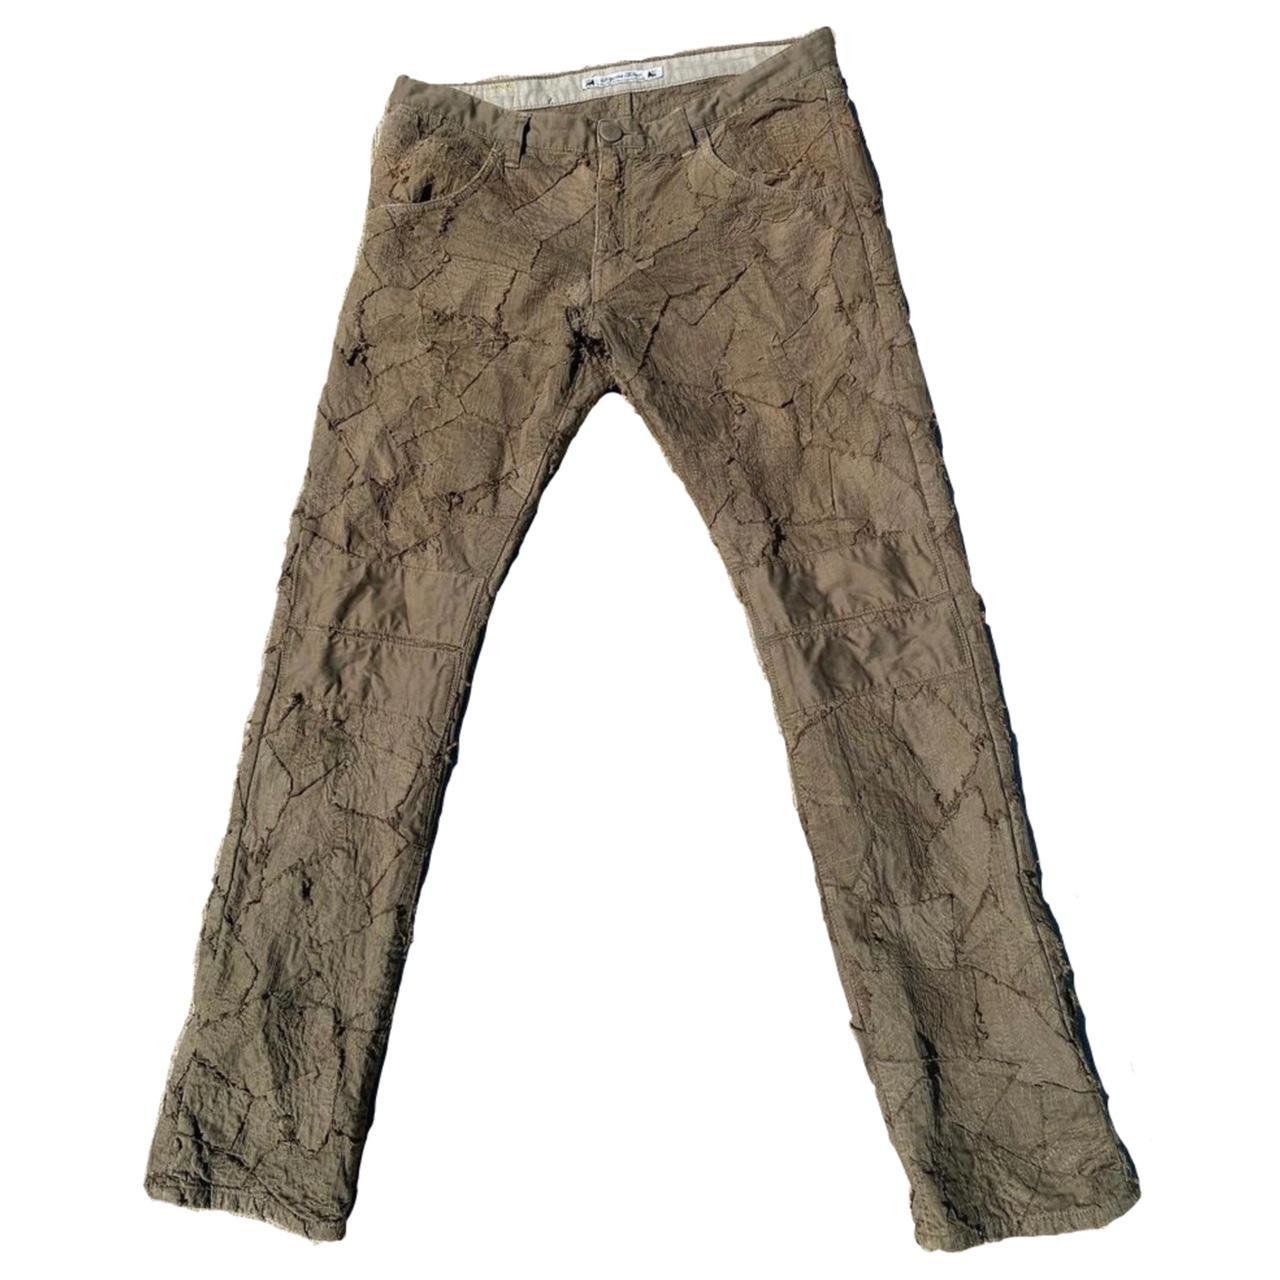 SasquatchFabrix A/W 2010 “Zombie” Stitch Denim Jeans - Depop